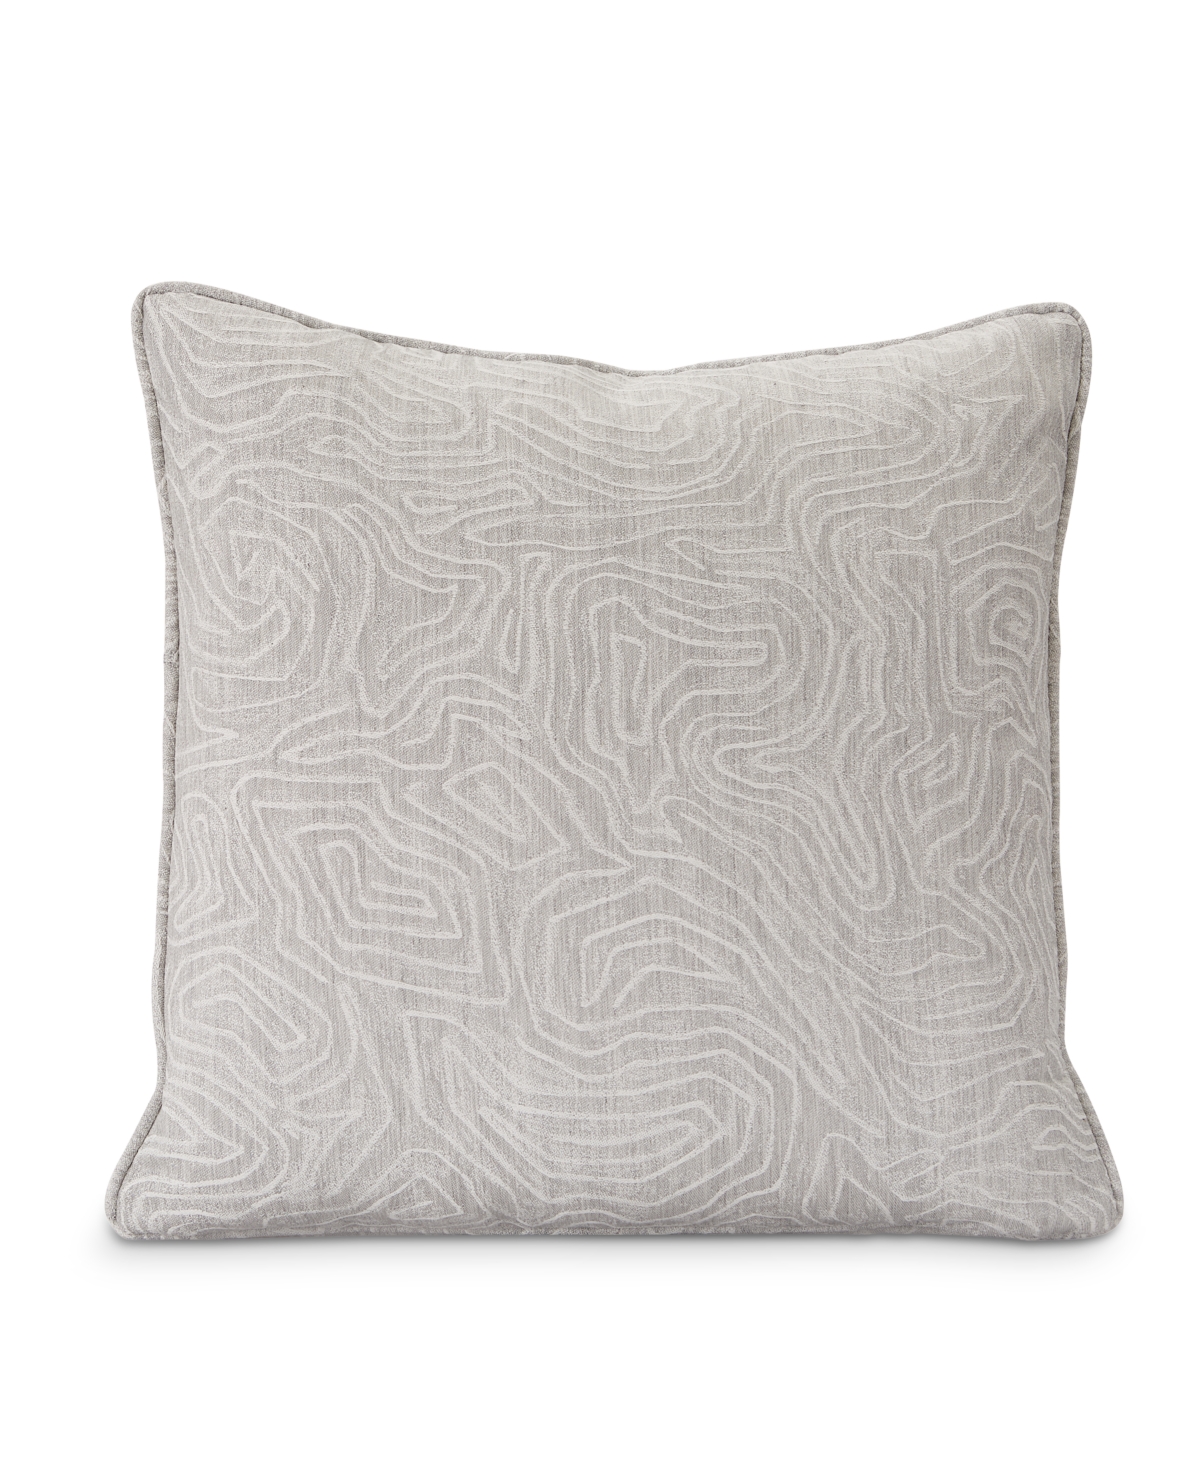 Bernhardt Capri Sofas 20 Accent Pillow in Sunbrella Fabric